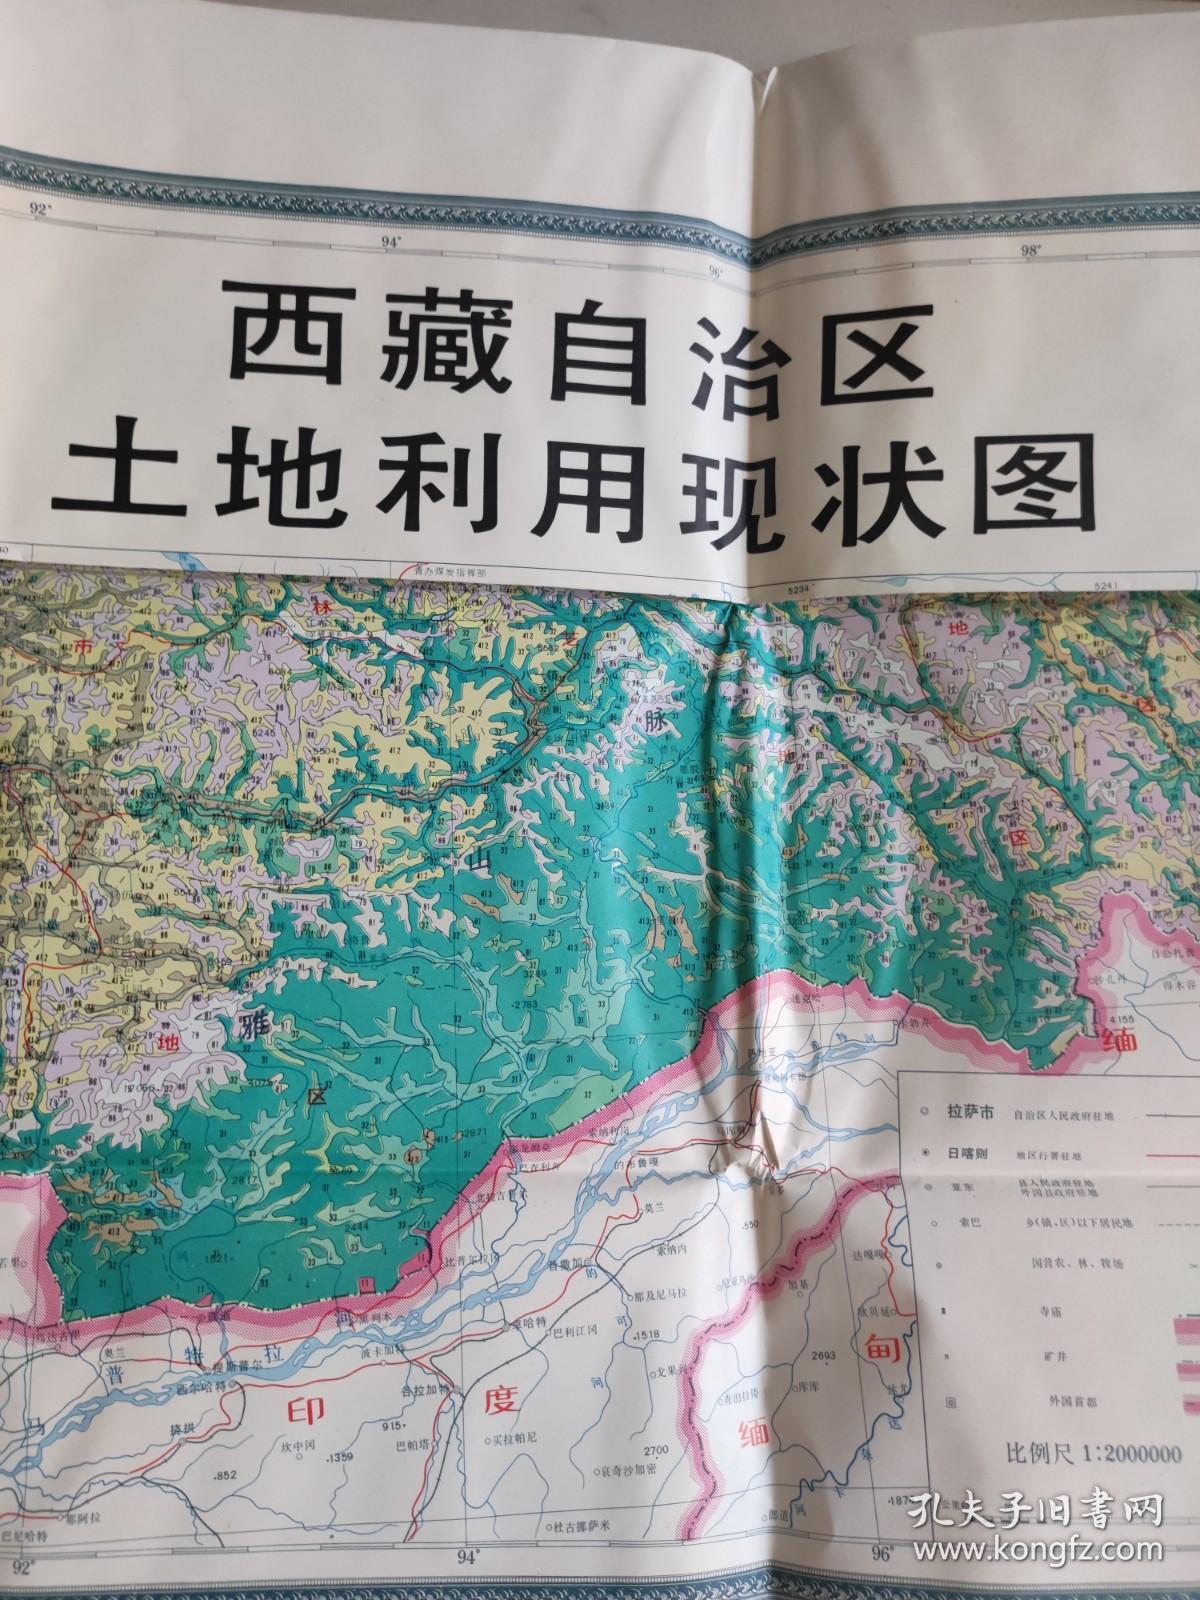 西藏自治区土地利用（附图一张）